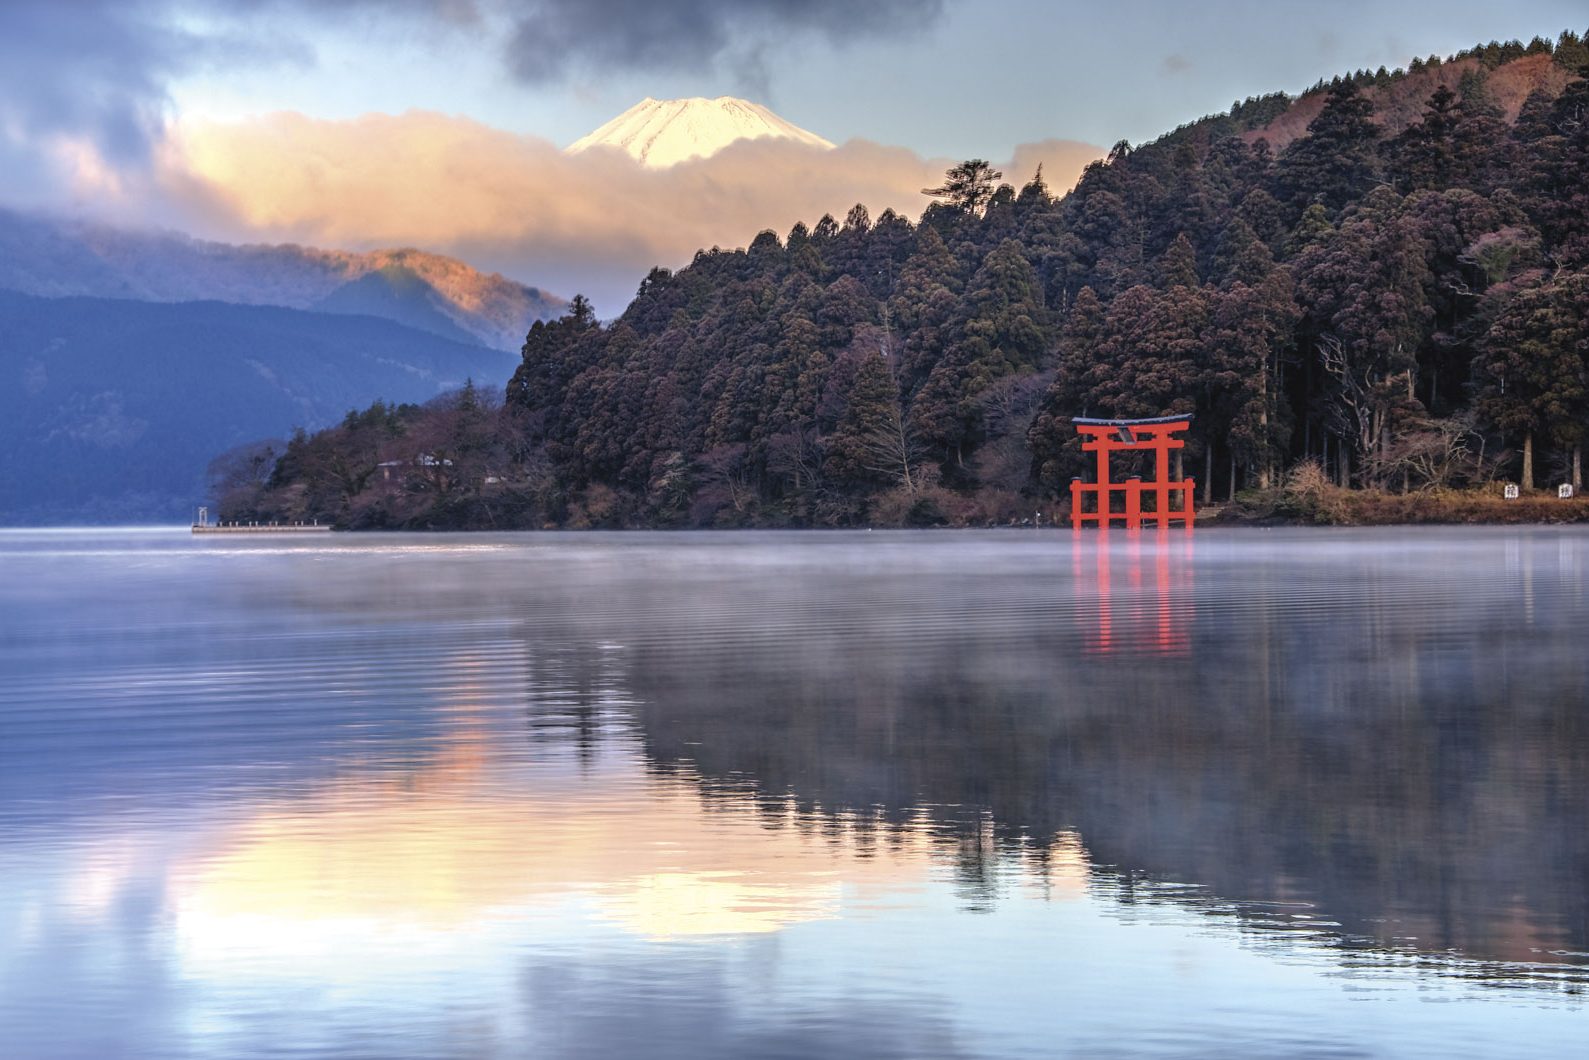 Mount Fuji Reflection on Lake Ashinoko, Hakone, Japan